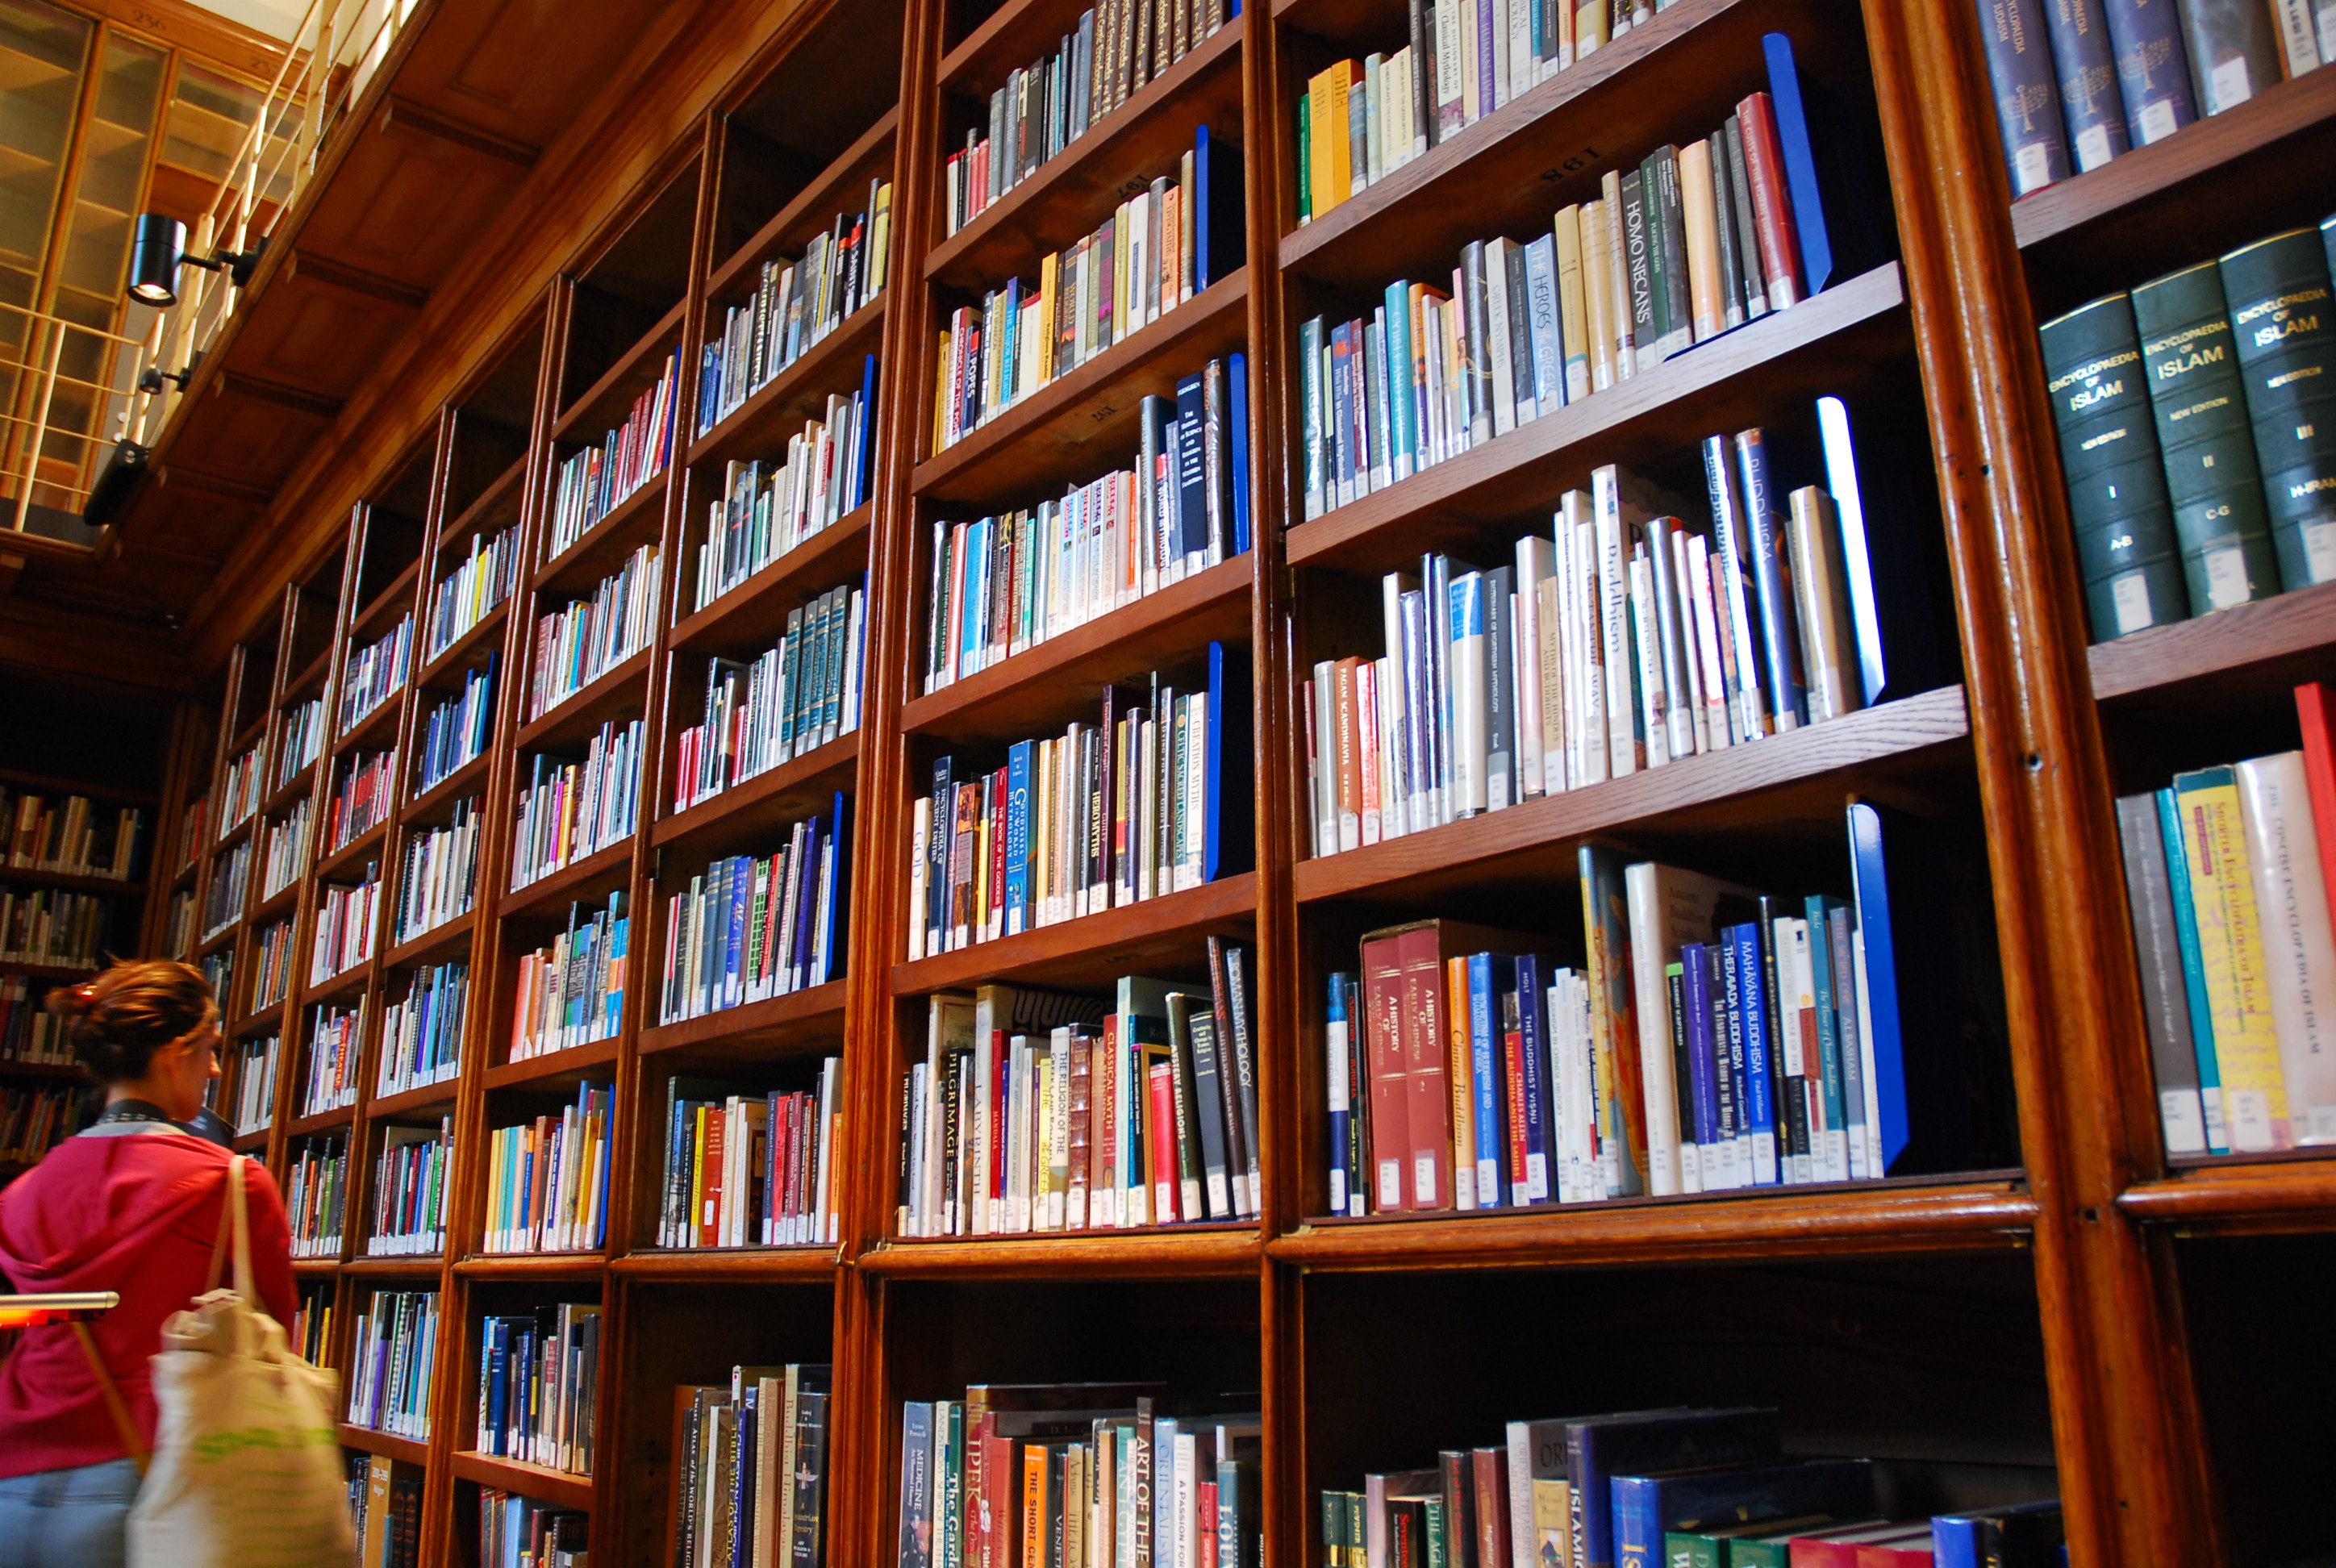 Libraries guide. Стеллажи для книг в библиотеку. Книжные полки в библиотеке. Полки с книгами в библиотеке. Красивая библиотека.